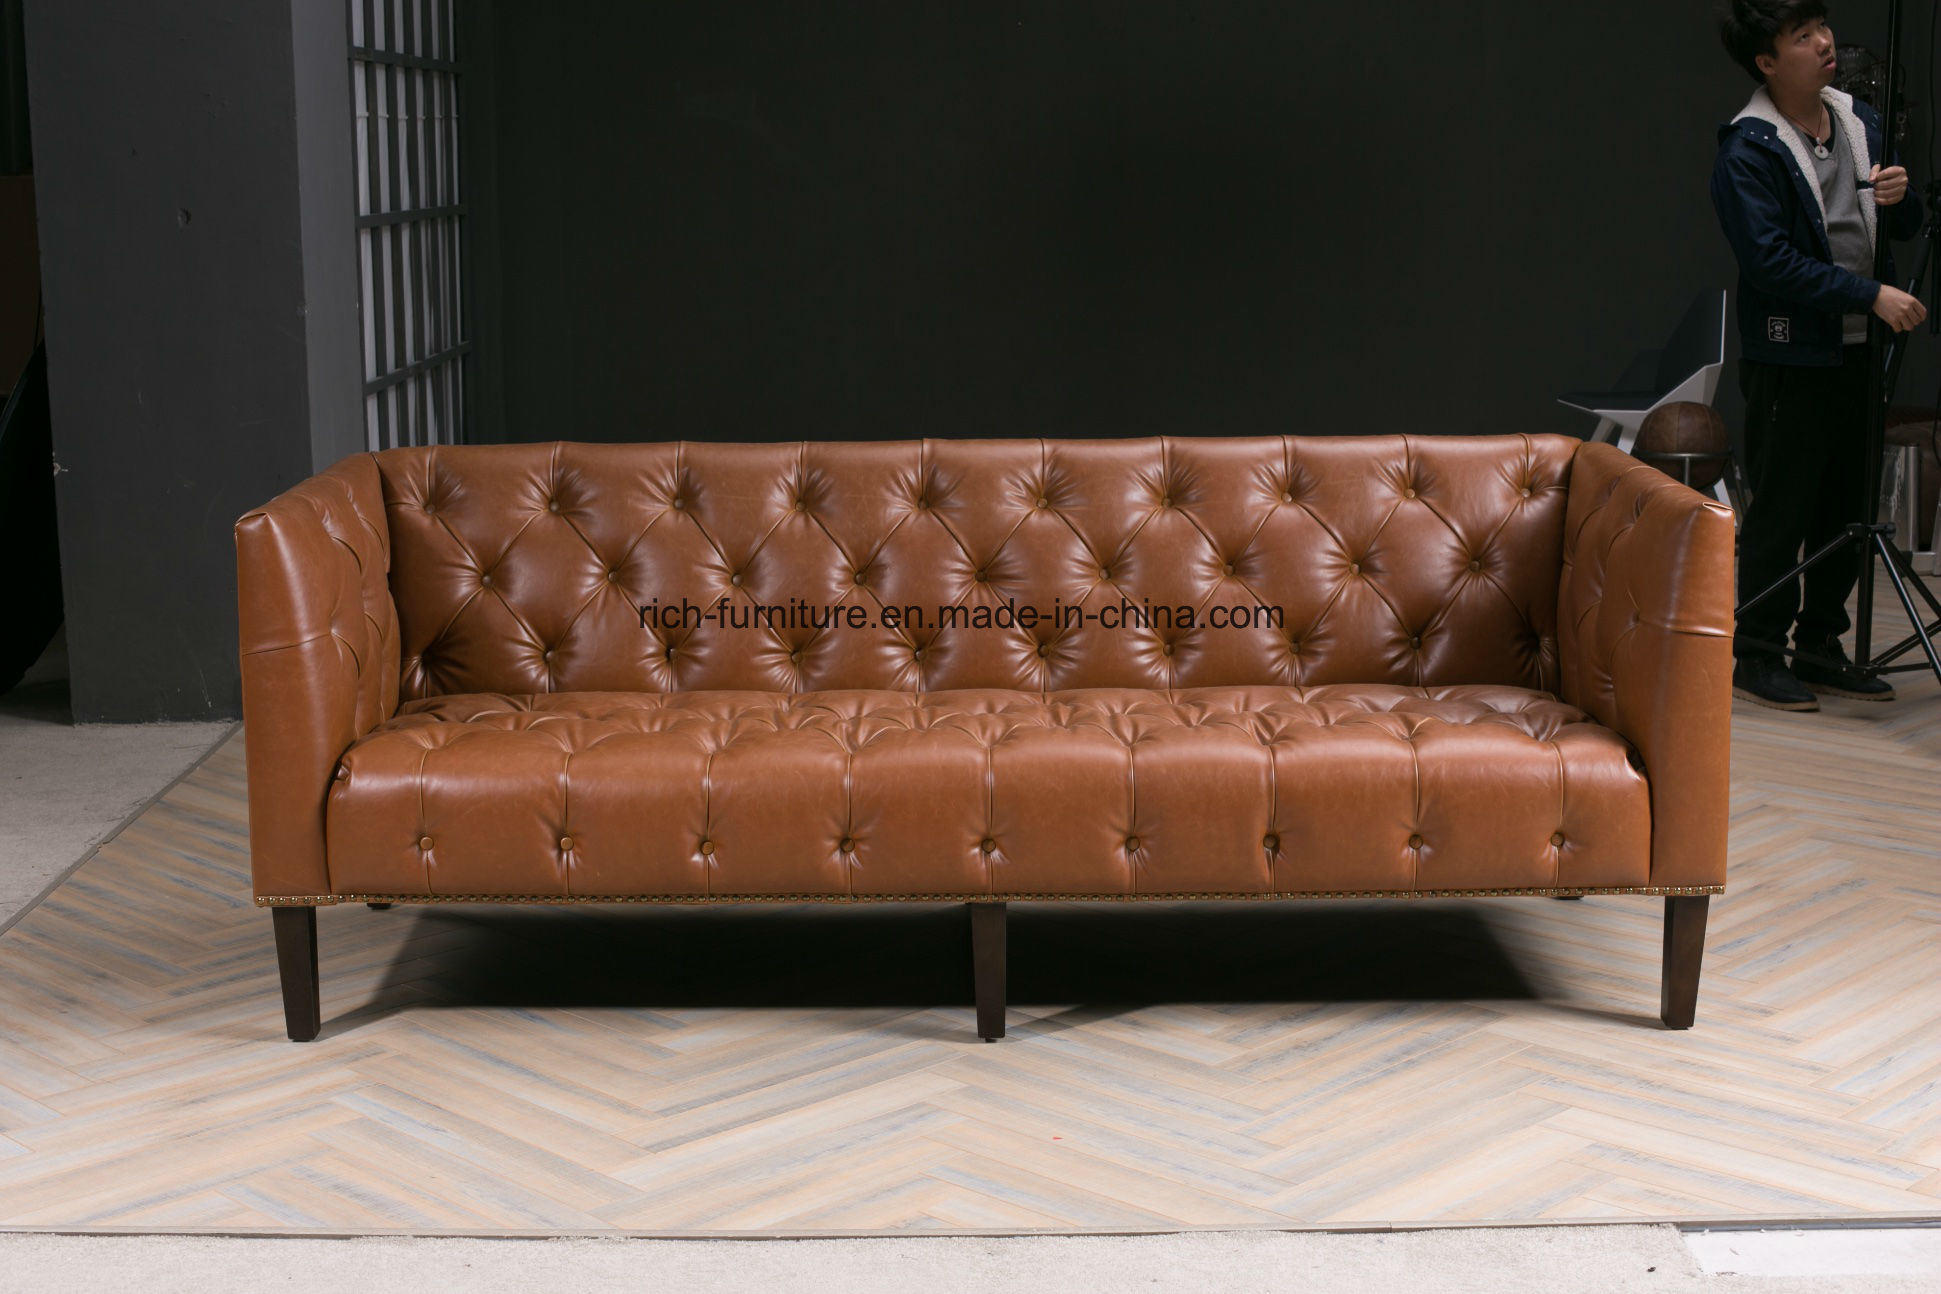 Solid Wood Frame Living Room Furniture Vintage Leather Sofa